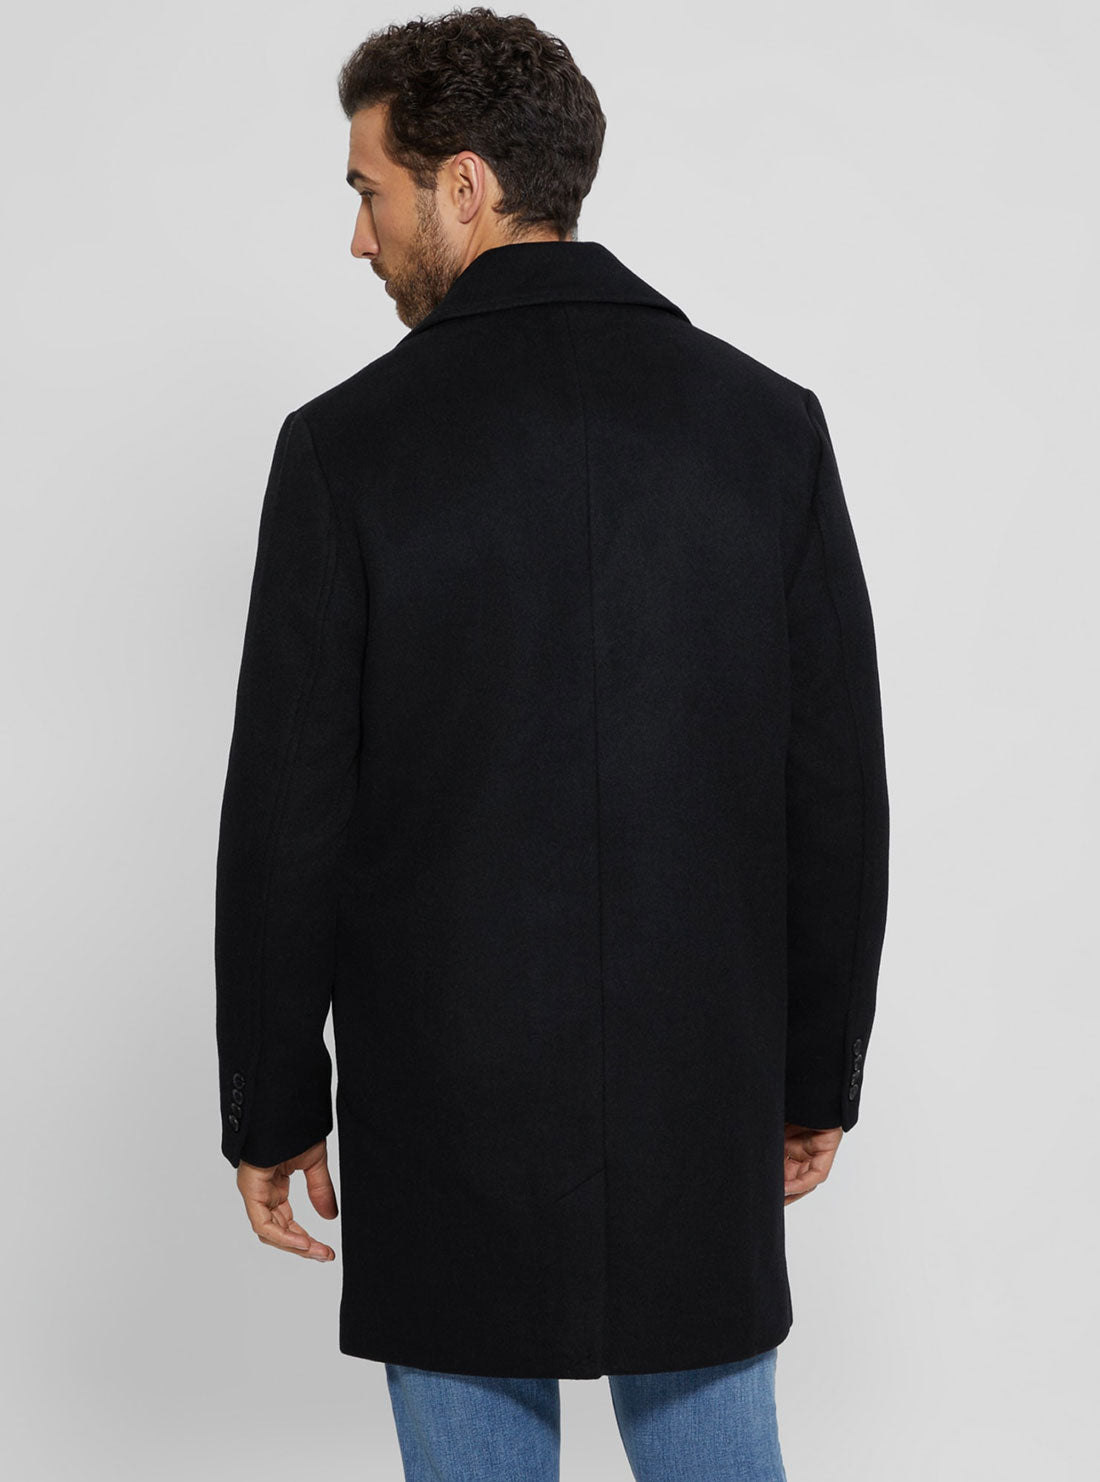 Black Bel Air Melton Wool Coat | GUESS men's apparel | back view